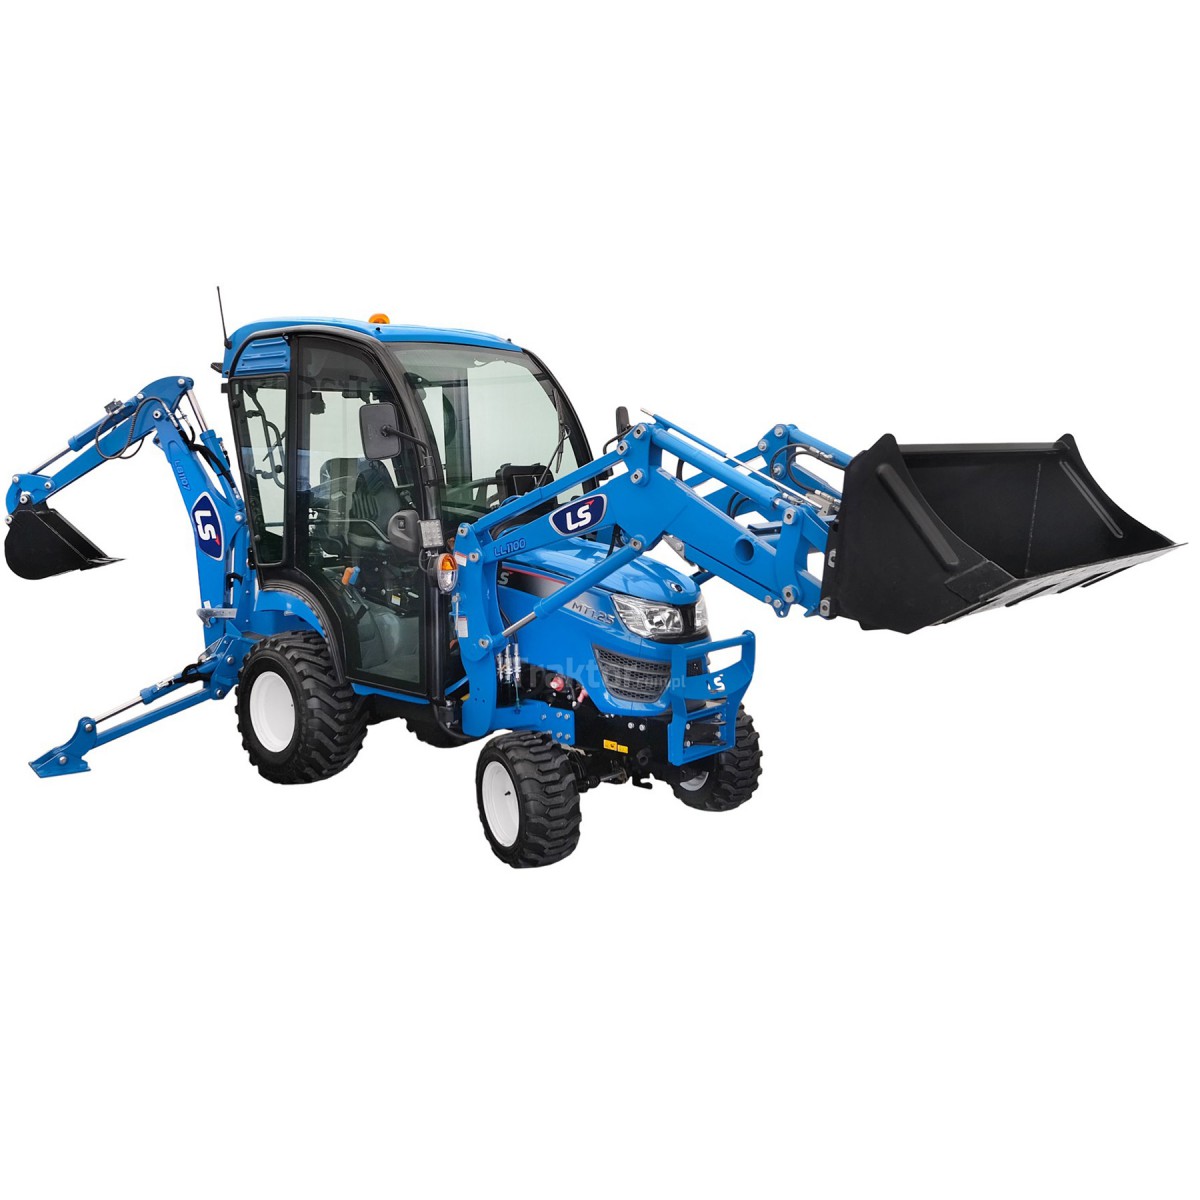 LS Tractor MT1.25 4x4 - 24.7 HP / IND / CAB + LB1107 excavator + TUR LL1100 loader